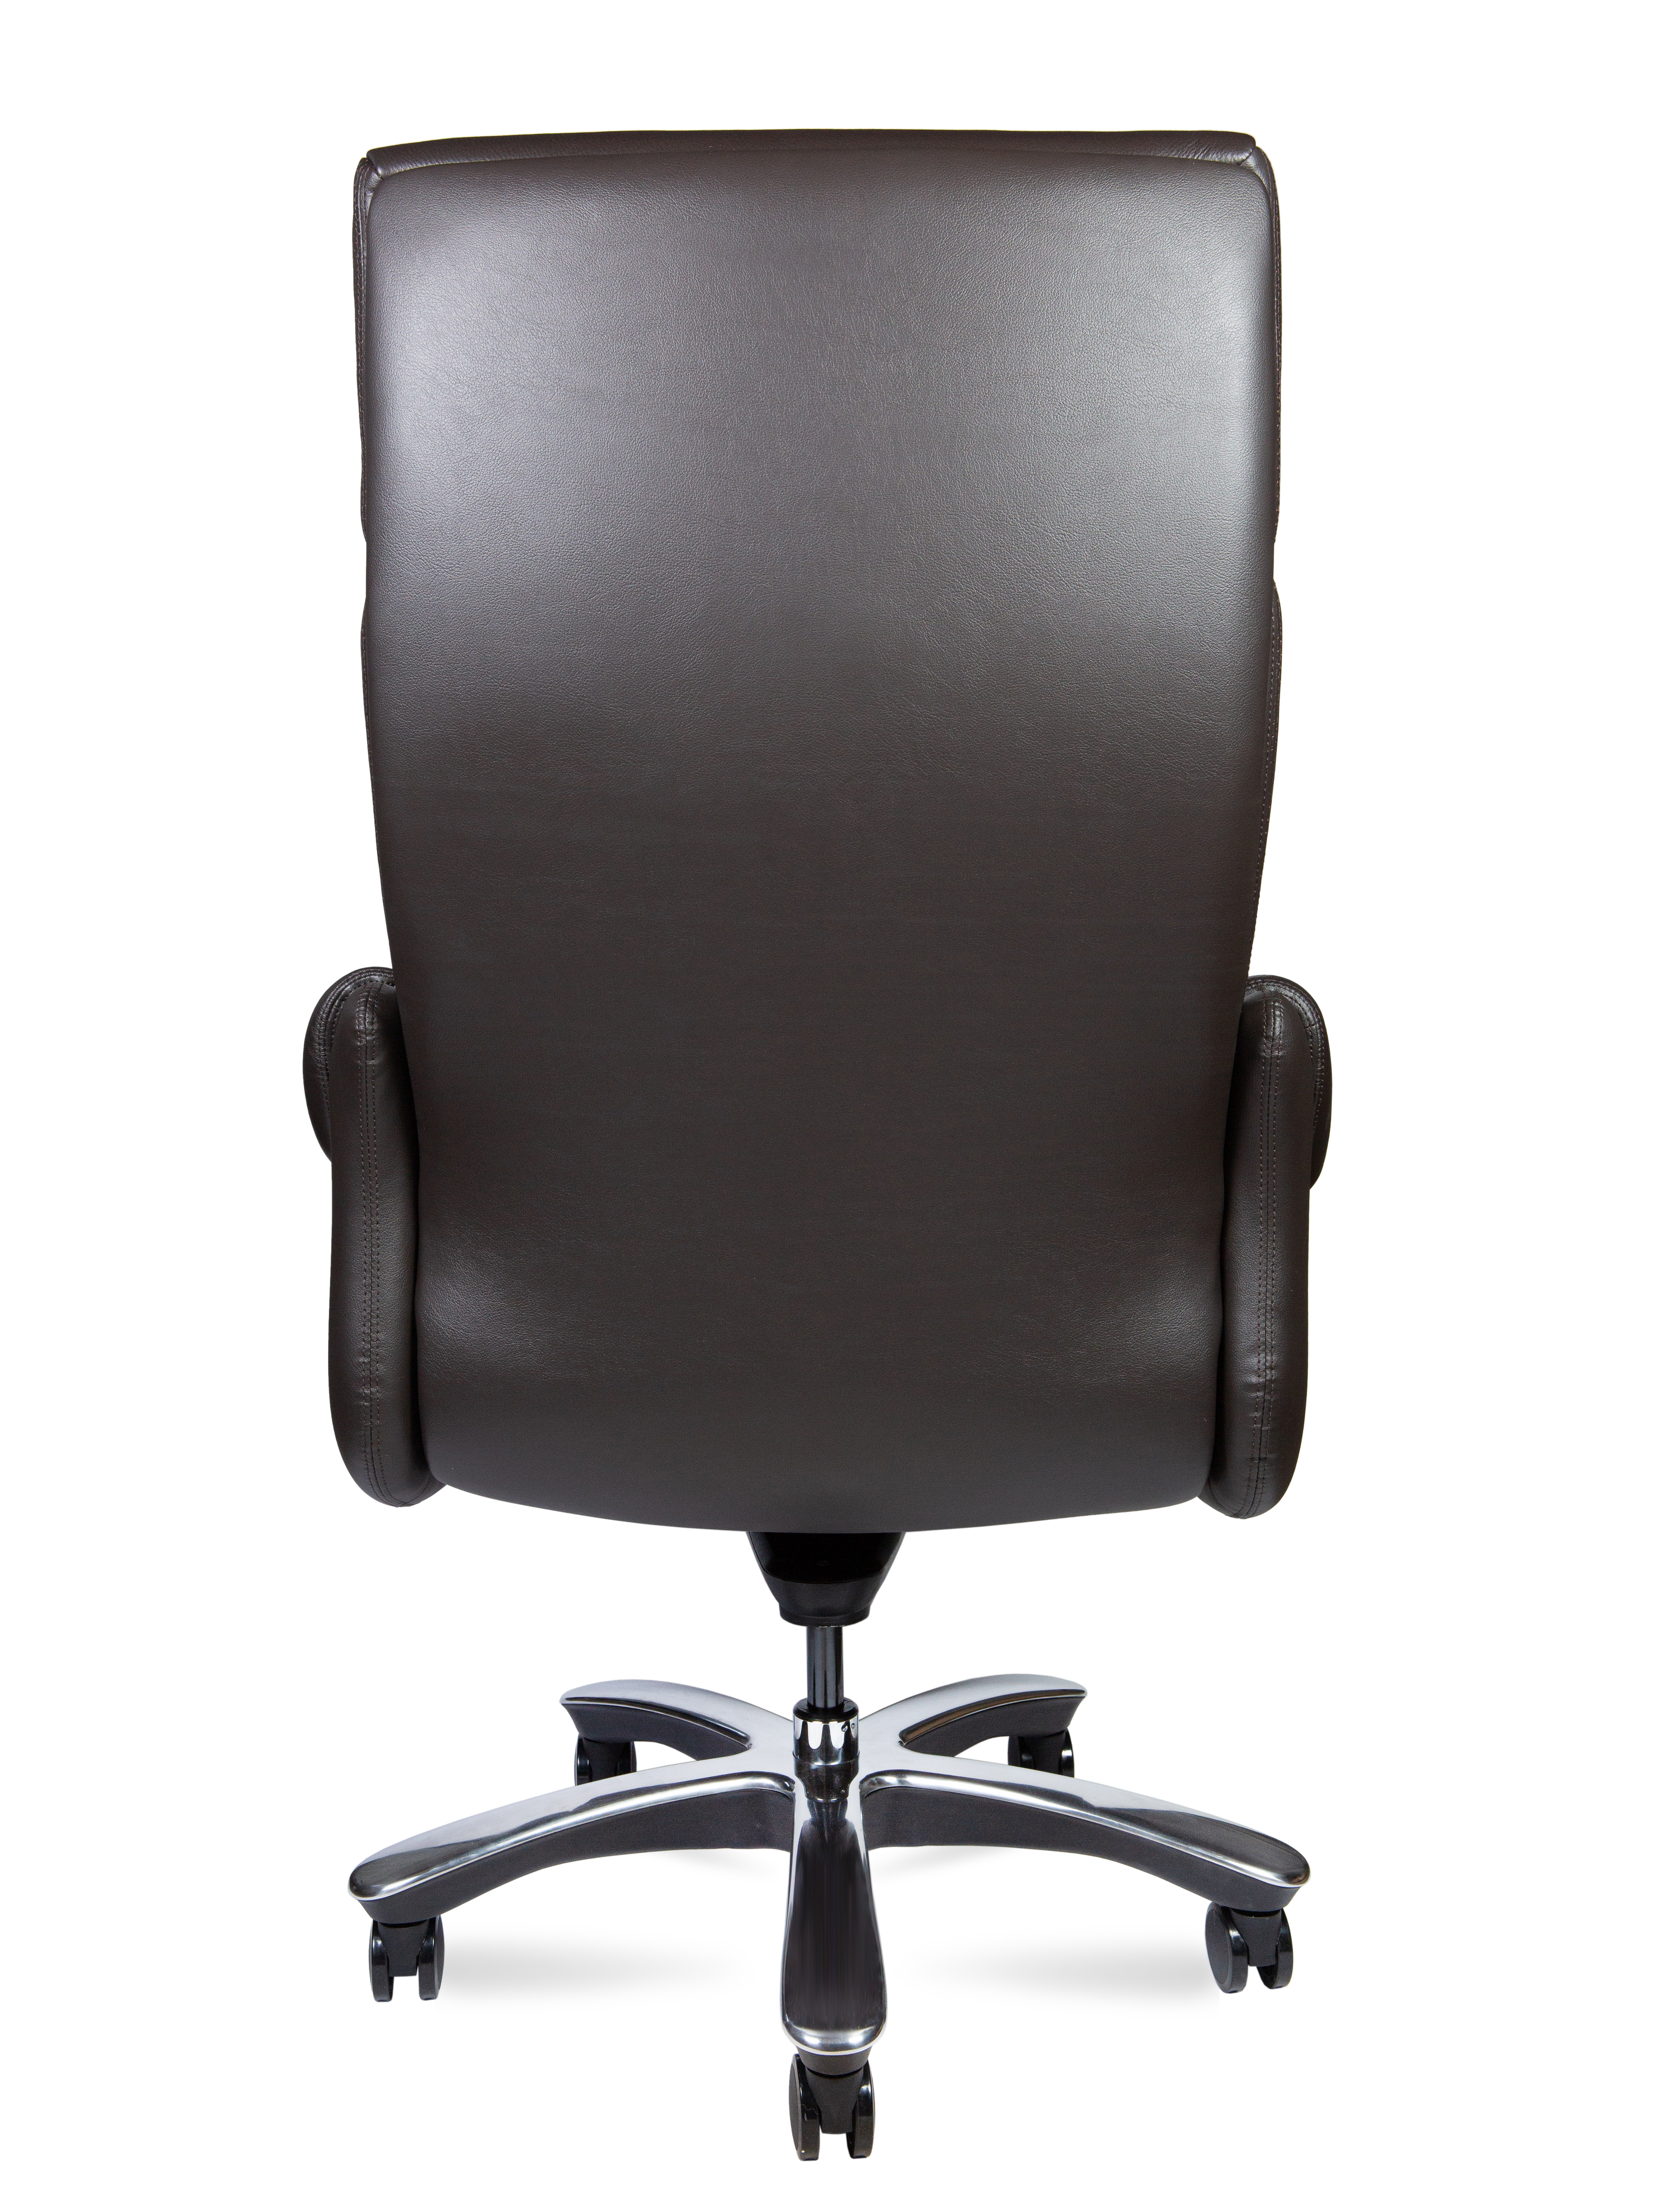 Кресло руководителя NORDEN Ritz кожа коричневый A 2108 brown leather